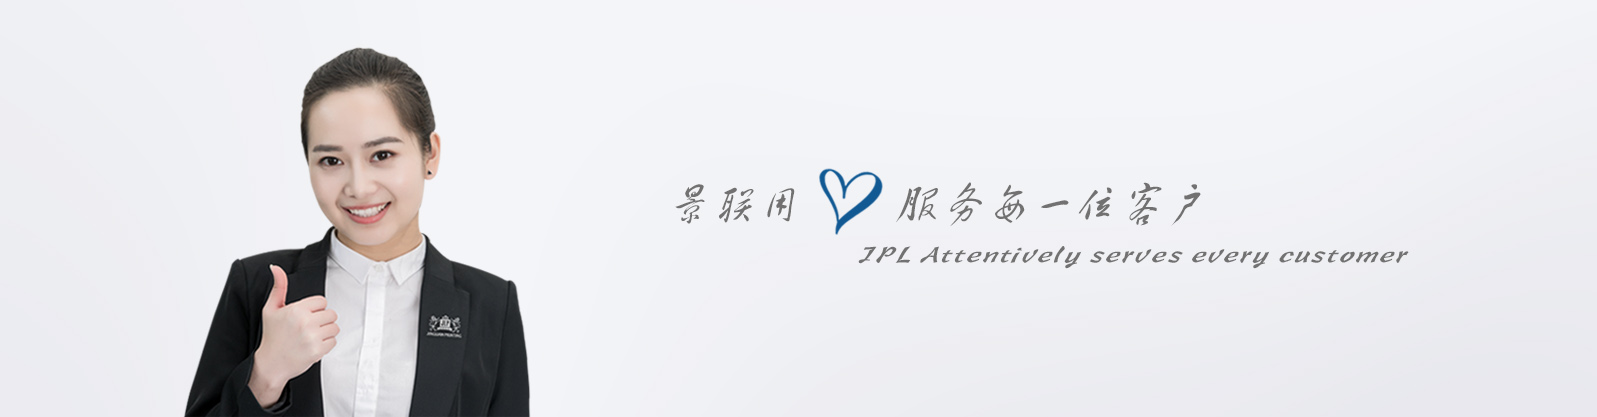 精装礼盒娱乐718官网|中国有限公司/礼盒设计(图11)